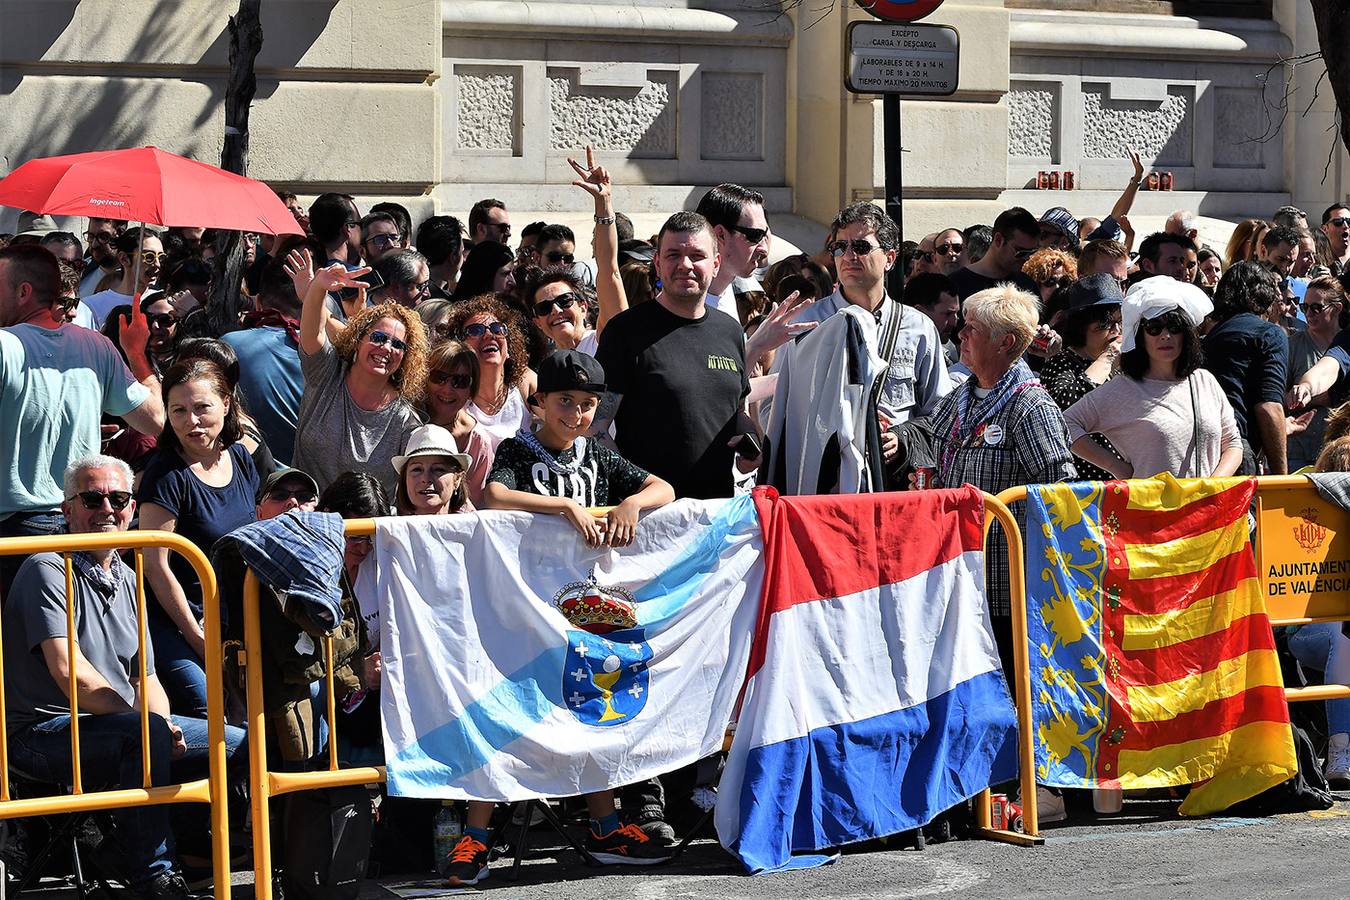 Búscate entre los asistentes a la mascletà del domingo 10 de marzo de 2019: público en la plaza del Ayuntamiento de Valencia.